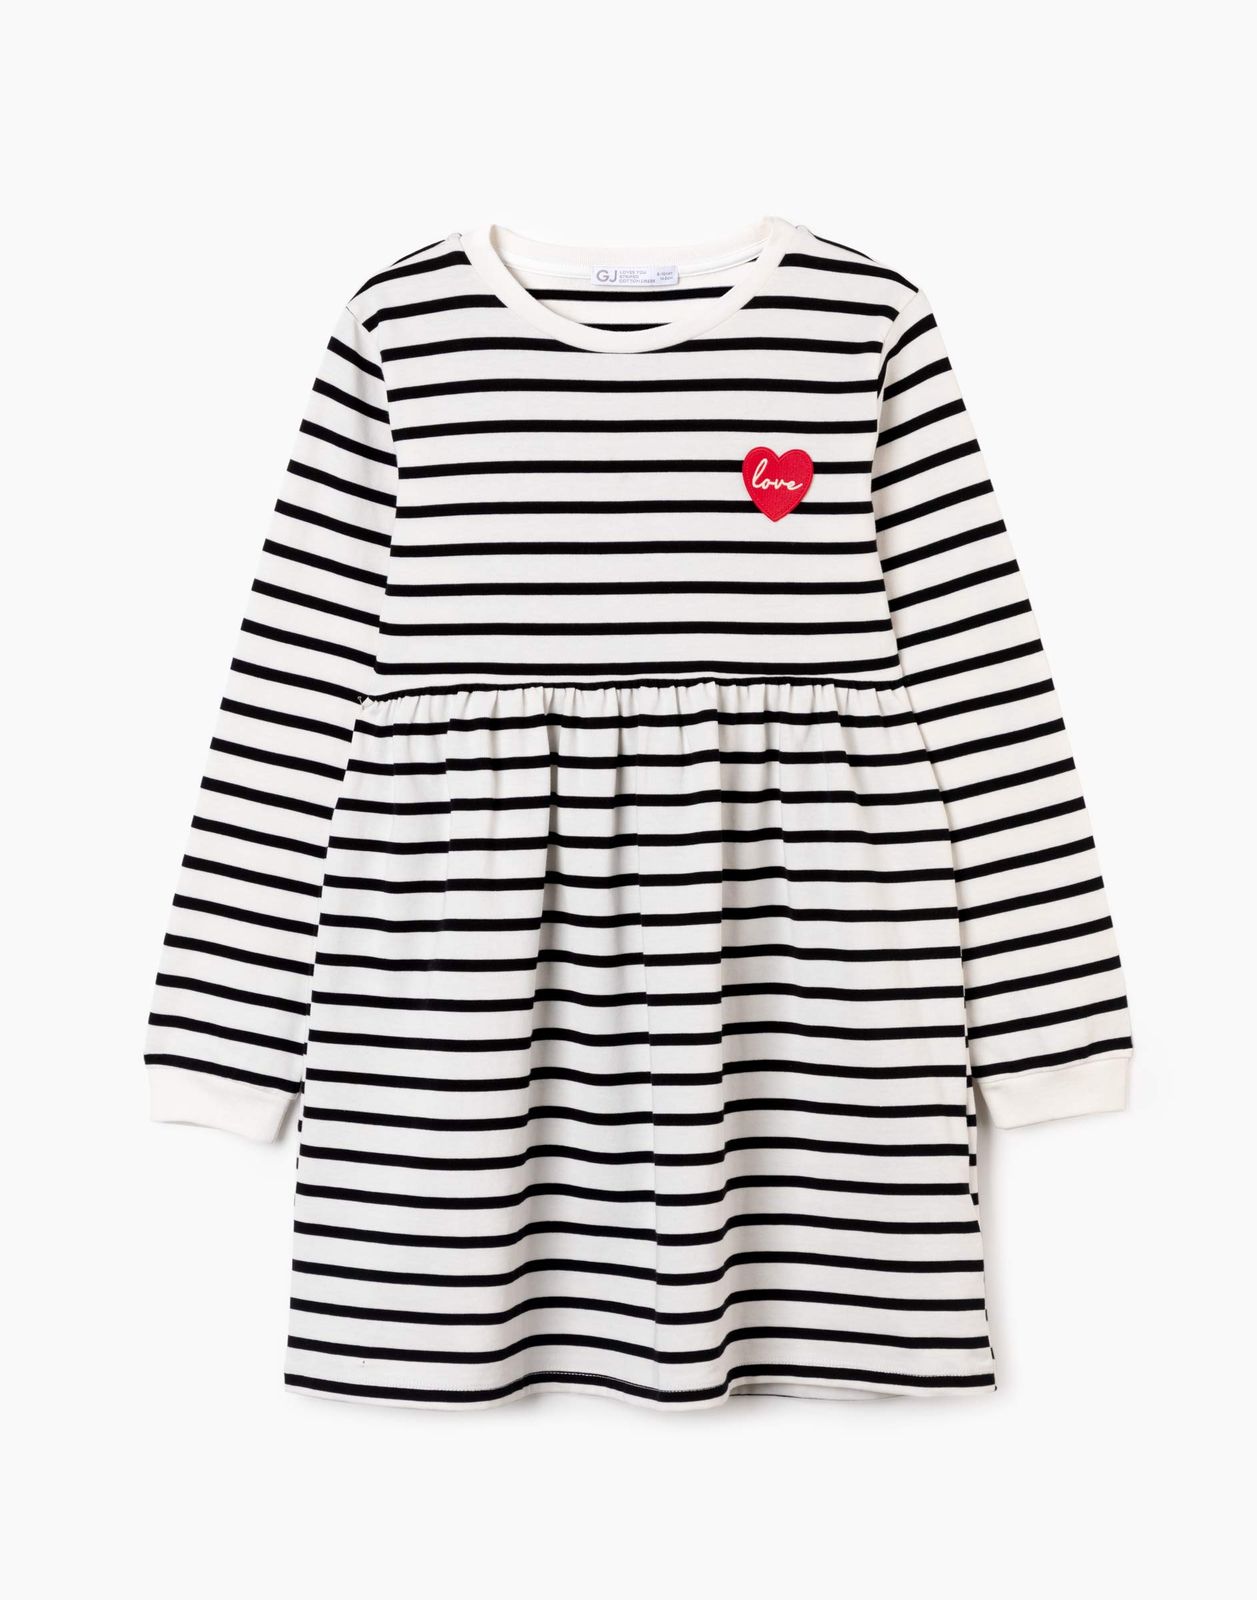 Платье детское Gloria Jeans GDR027486, молочный/черный, 122 темно синяя шапка с вертикальными полосками catya детское